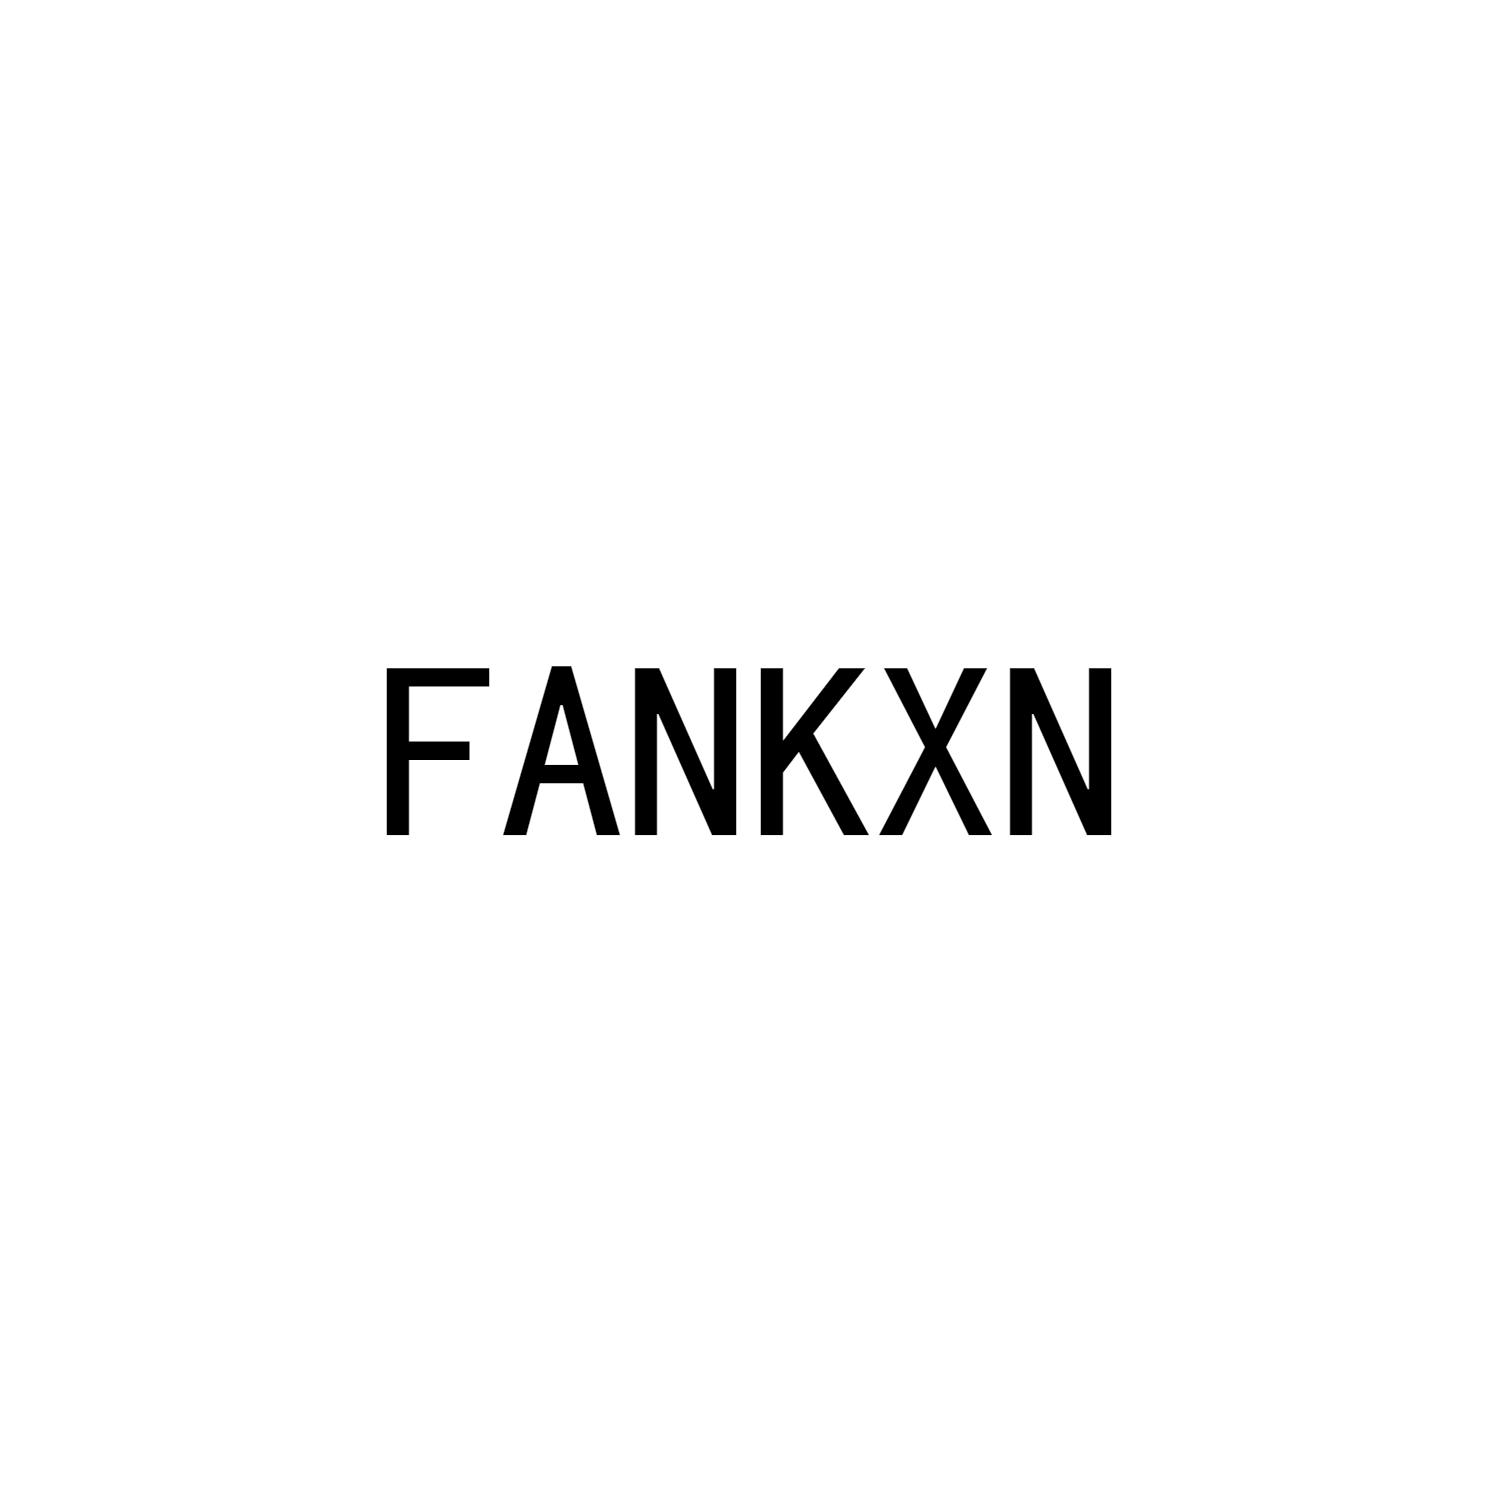 FANKXN